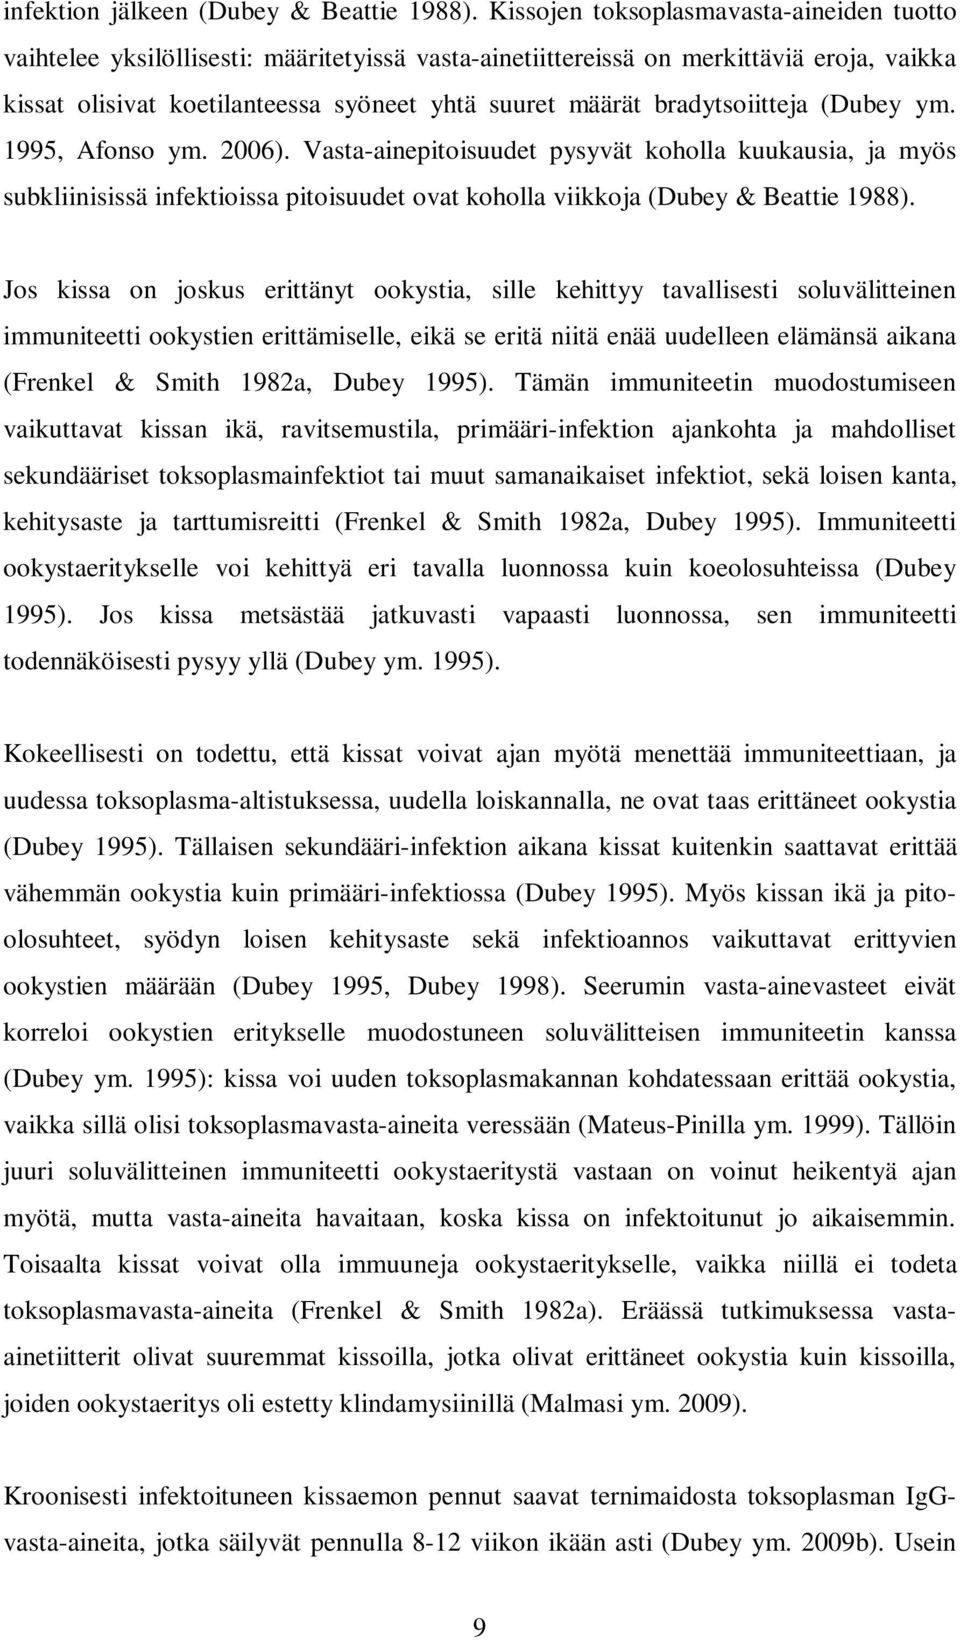 bradytsoiitteja (Dubey ym. 1995, Afonso ym. 2006). Vasta-ainepitoisuudet pysyvät koholla kuukausia, ja myös subkliinisissä infektioissa pitoisuudet ovat koholla viikkoja (Dubey & Beattie 1988).